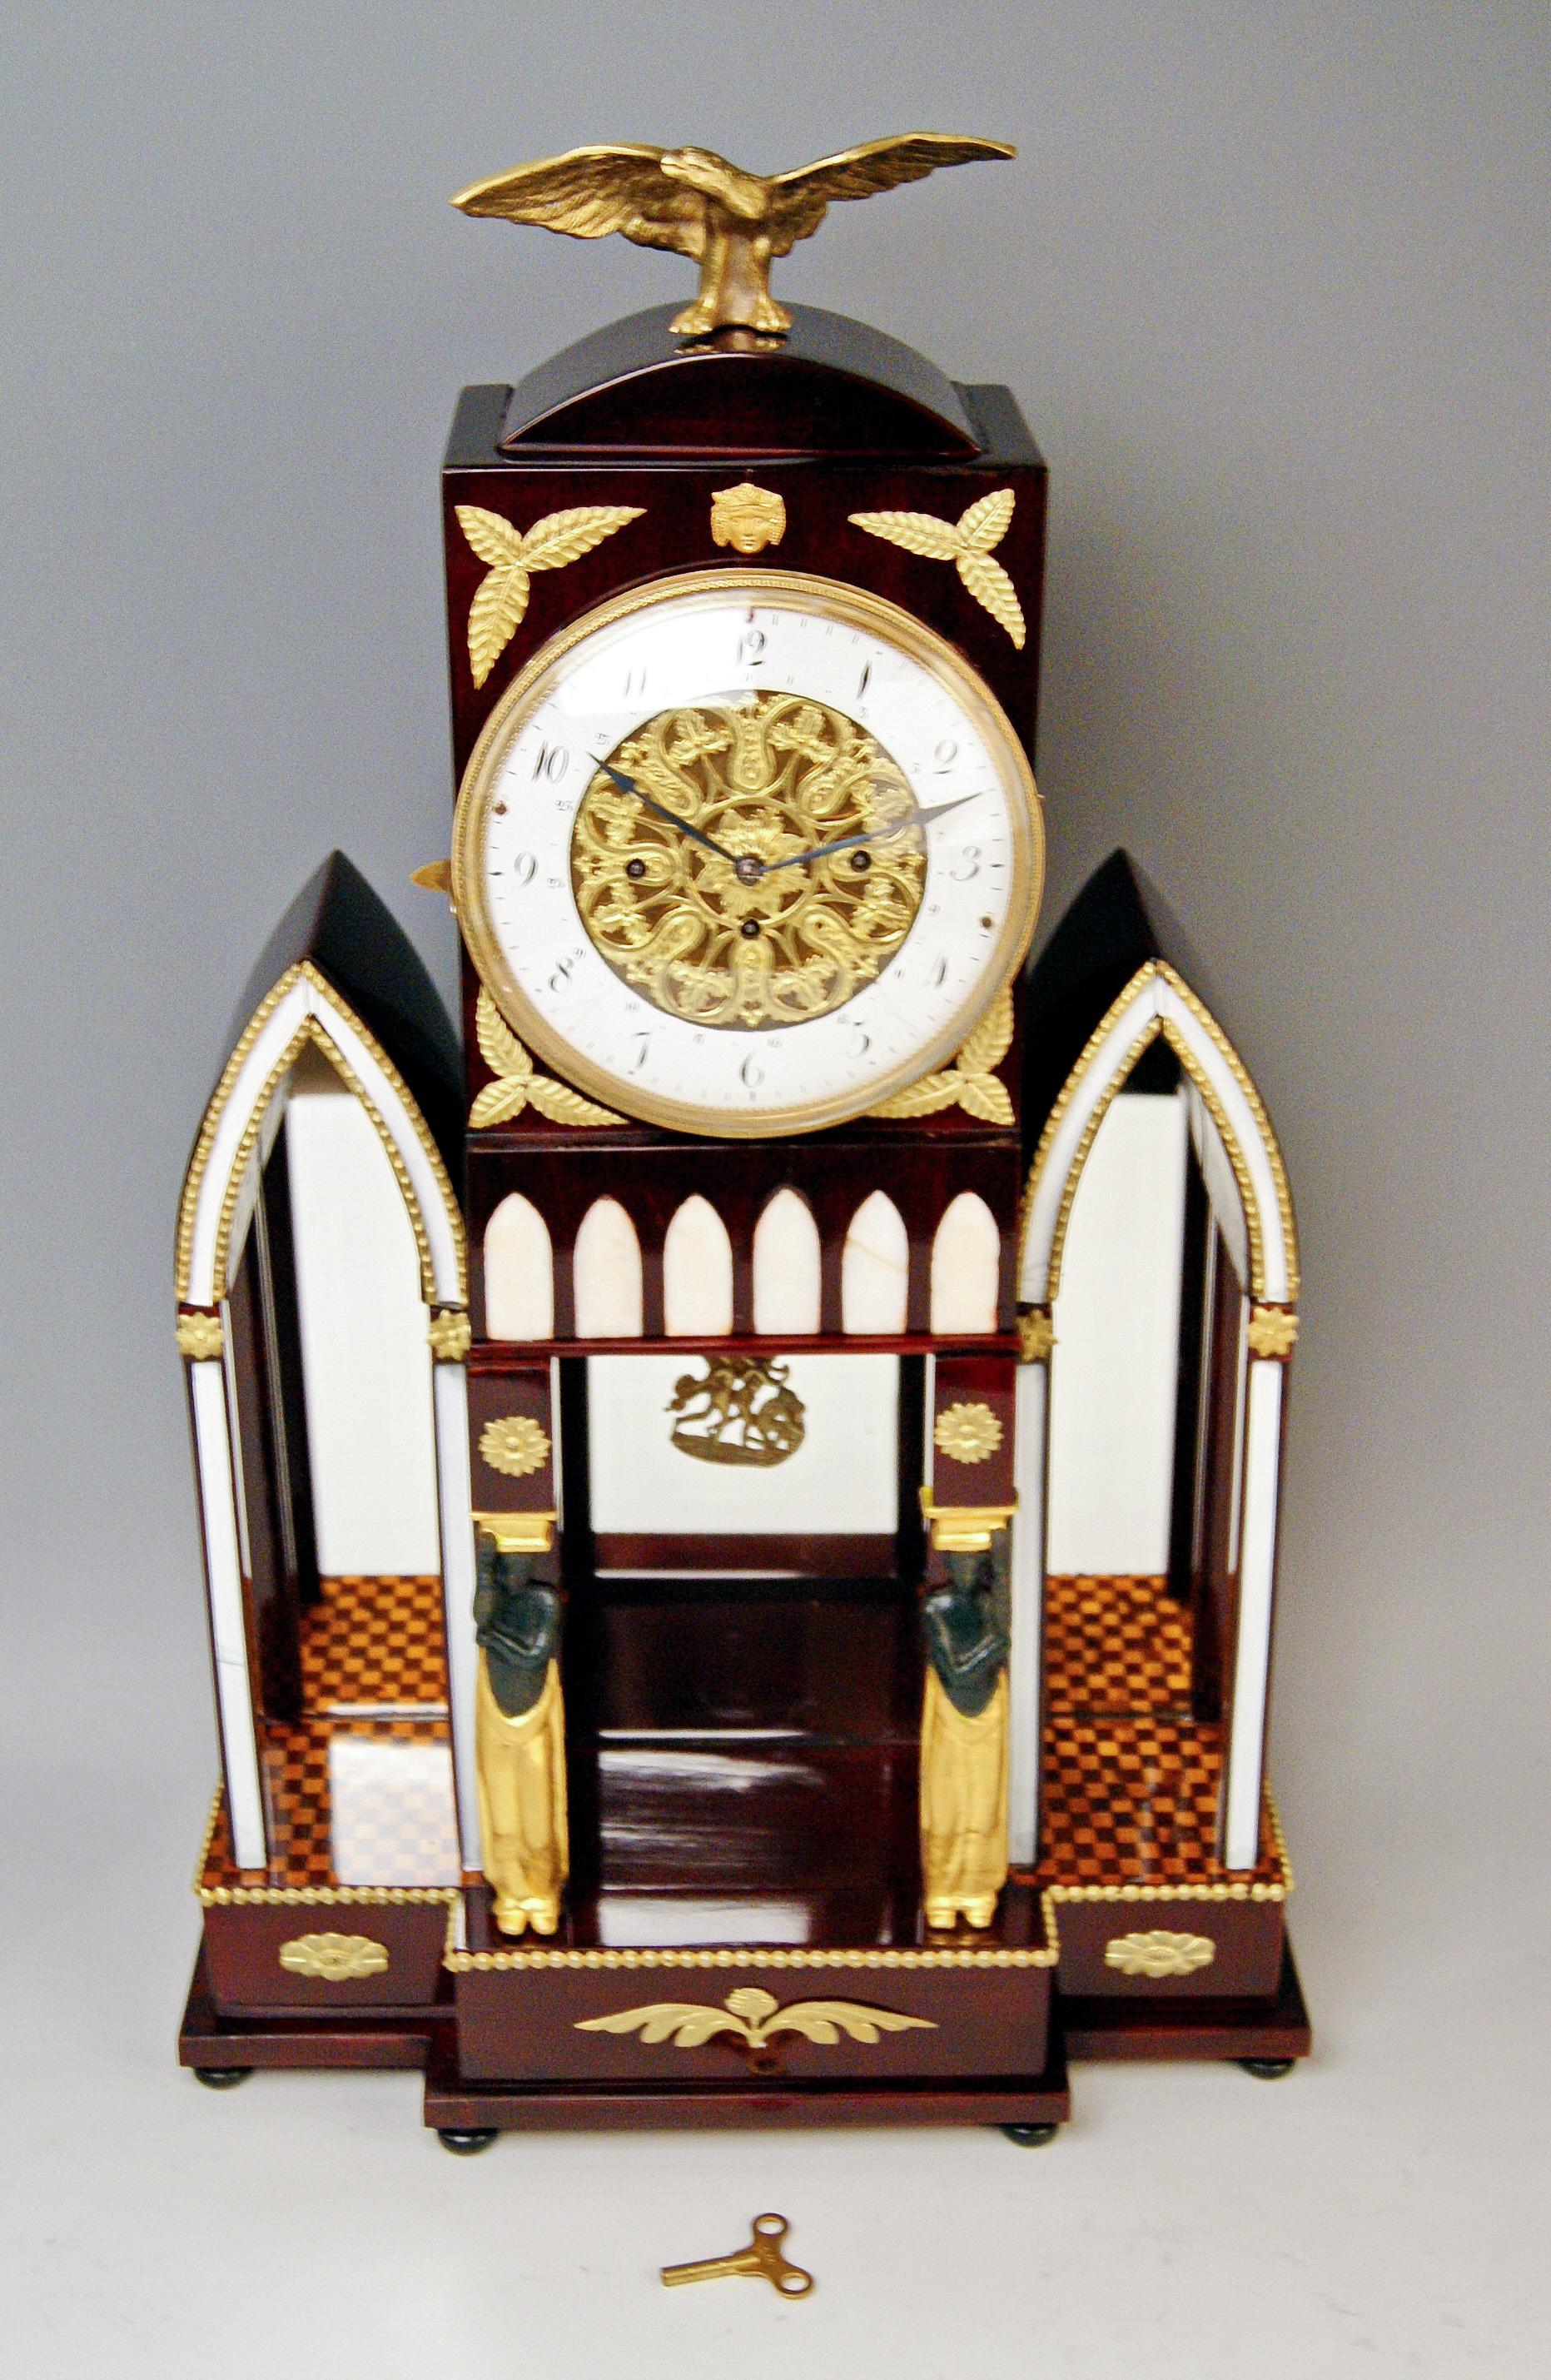 Wiener Mantel / Kaminsims / Tischschlaguhr Empire Stil

Herstellungsdatum: ca. 1810-1820

MATERIAL:
Das Gehäuse der Uhr ist aus dunkel gebeiztem Mahagoniholz gefertigt / aufgearbeitet und handpoliert
ENAMEL-UHRENZIFFERN (arabische Ziffern) /